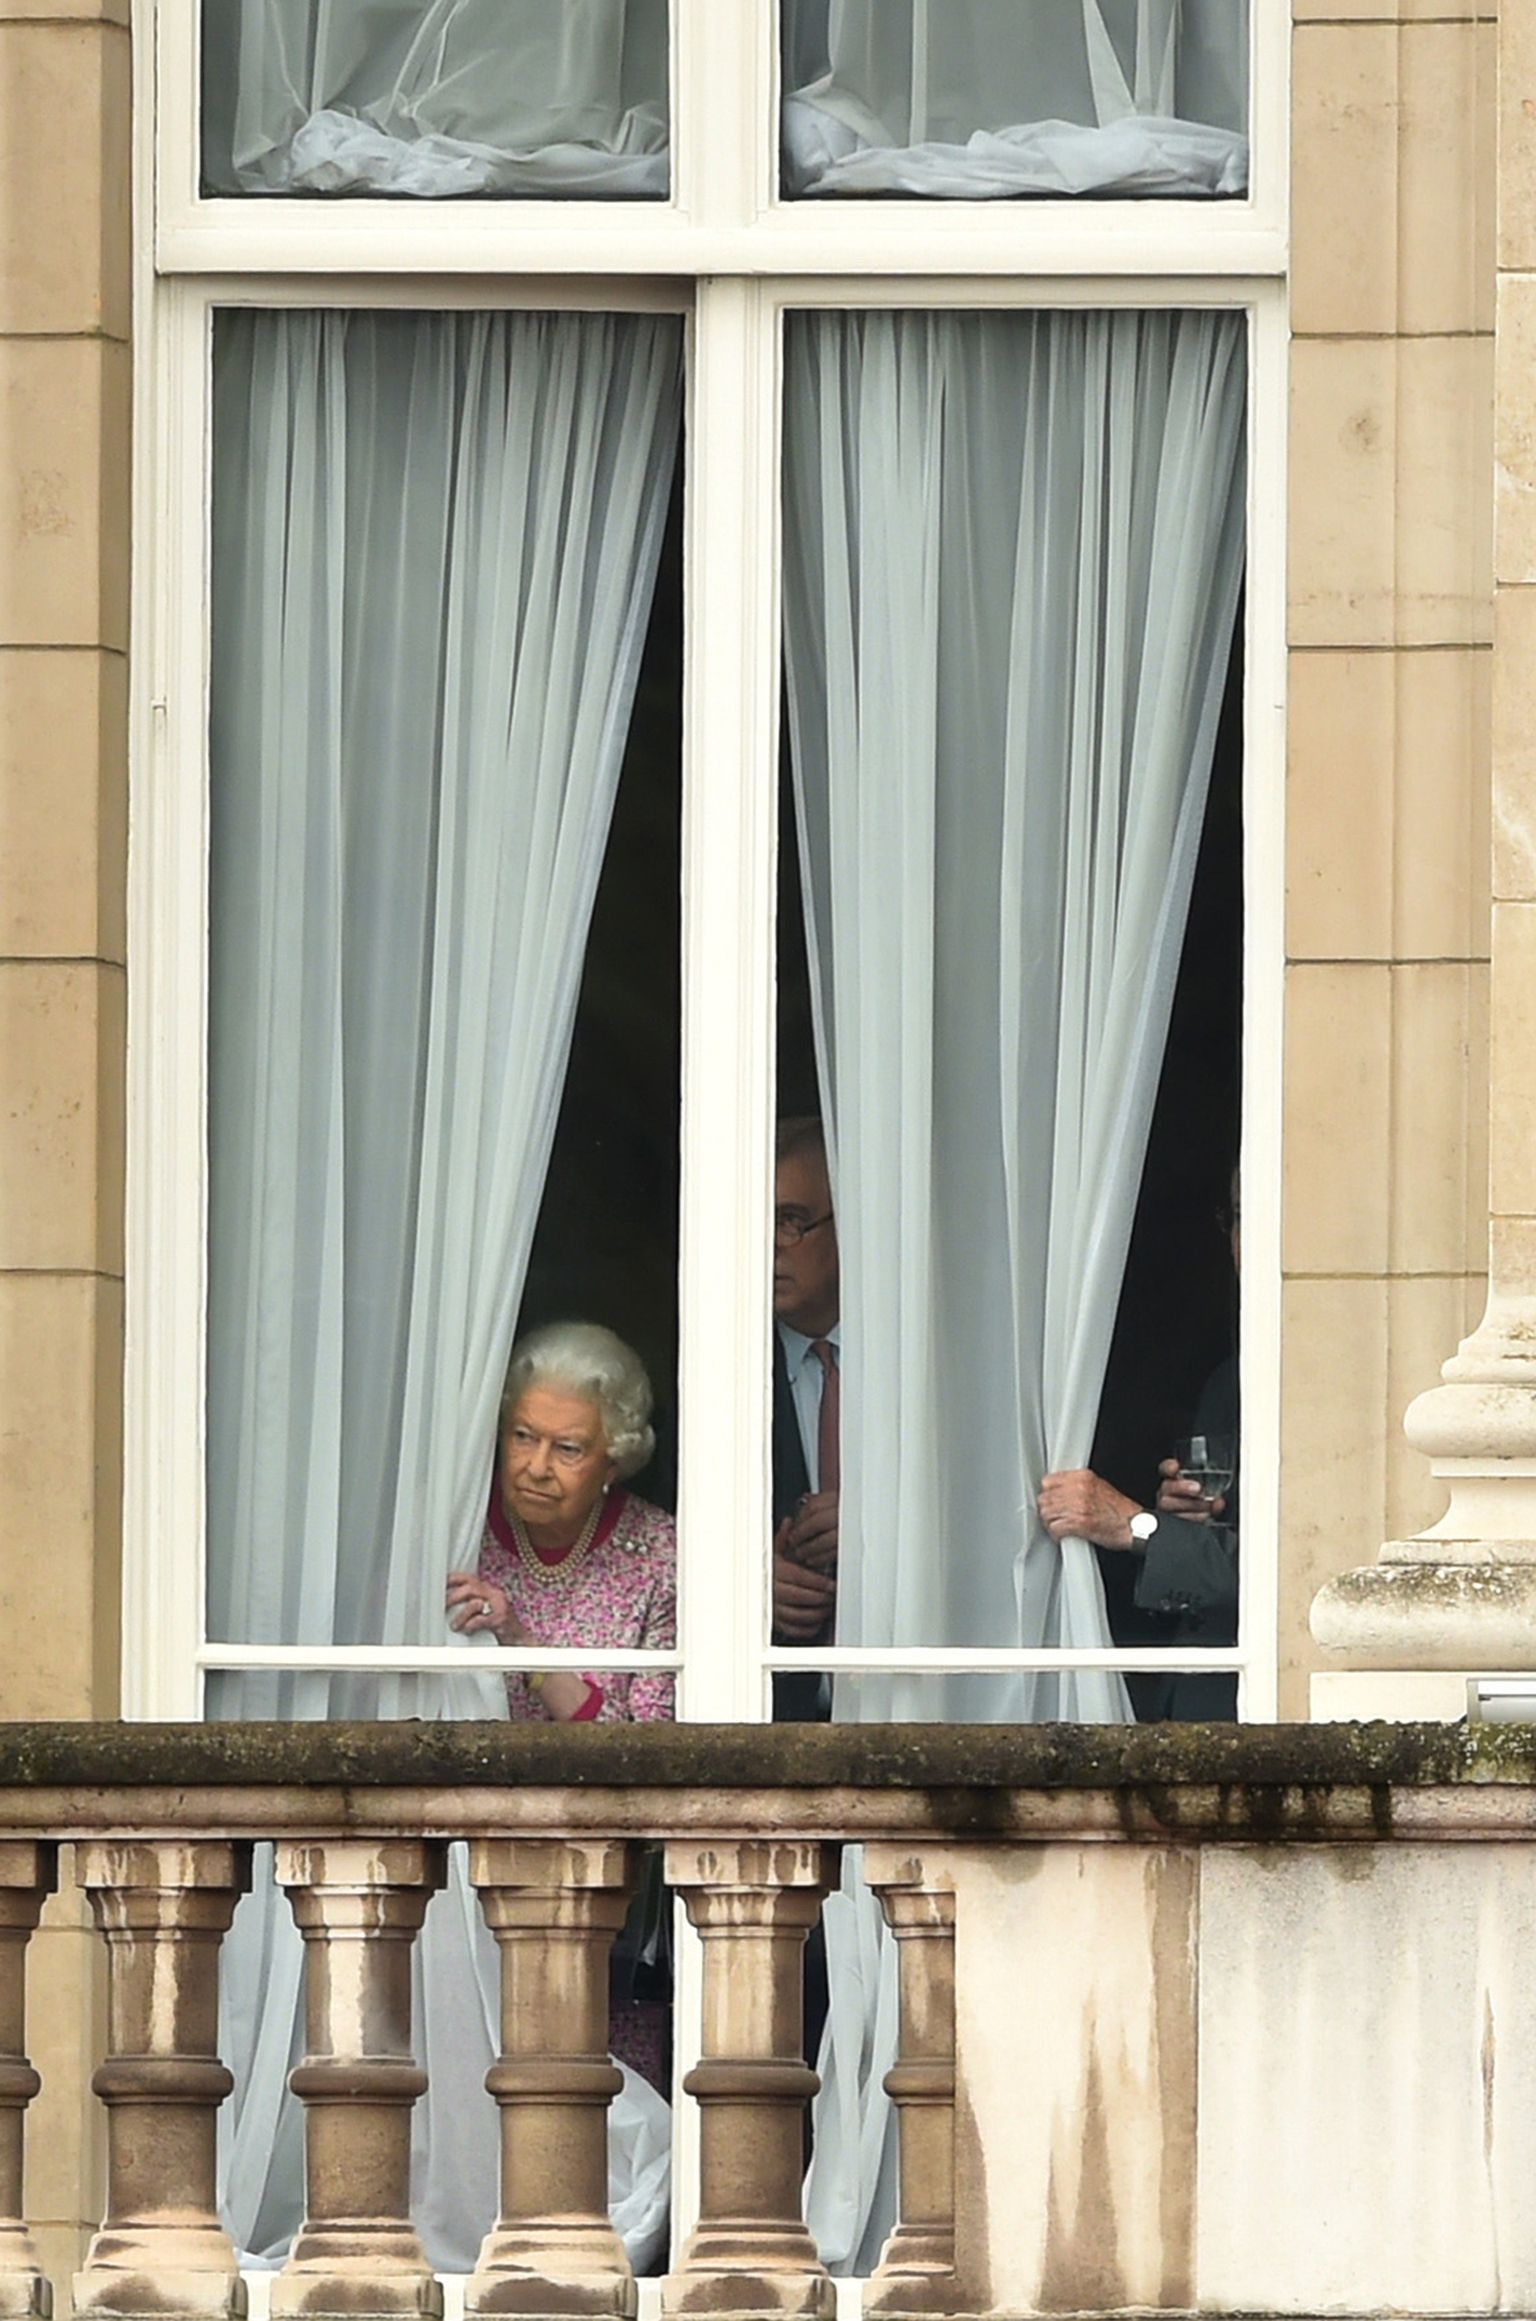 Kuninganna Elizabeth II vaatab Buckinghami palee aknast välja.